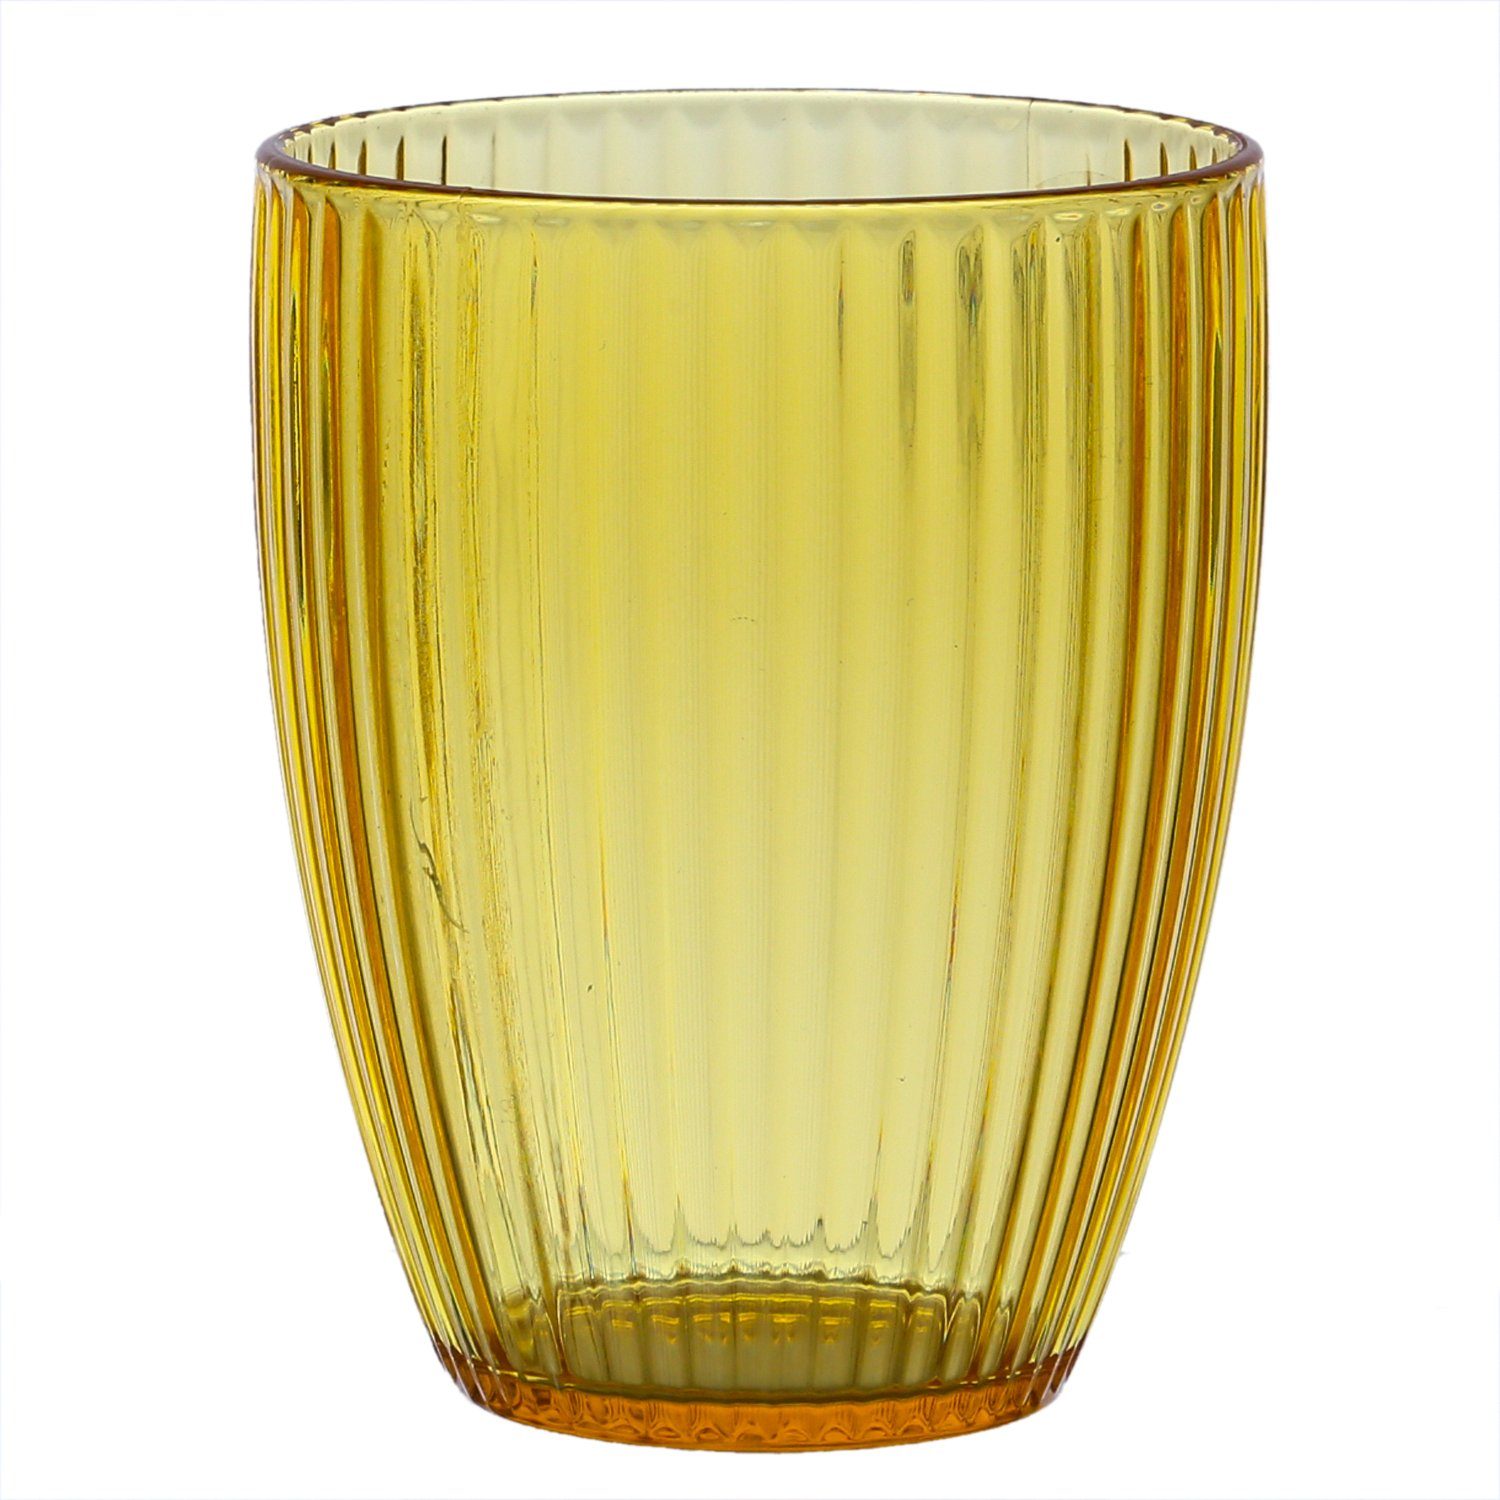 MARELIDA Glas Trinkglas Becher Wasserglas mit Rillen Camping Picknick 430ml gelb, Kunststoff